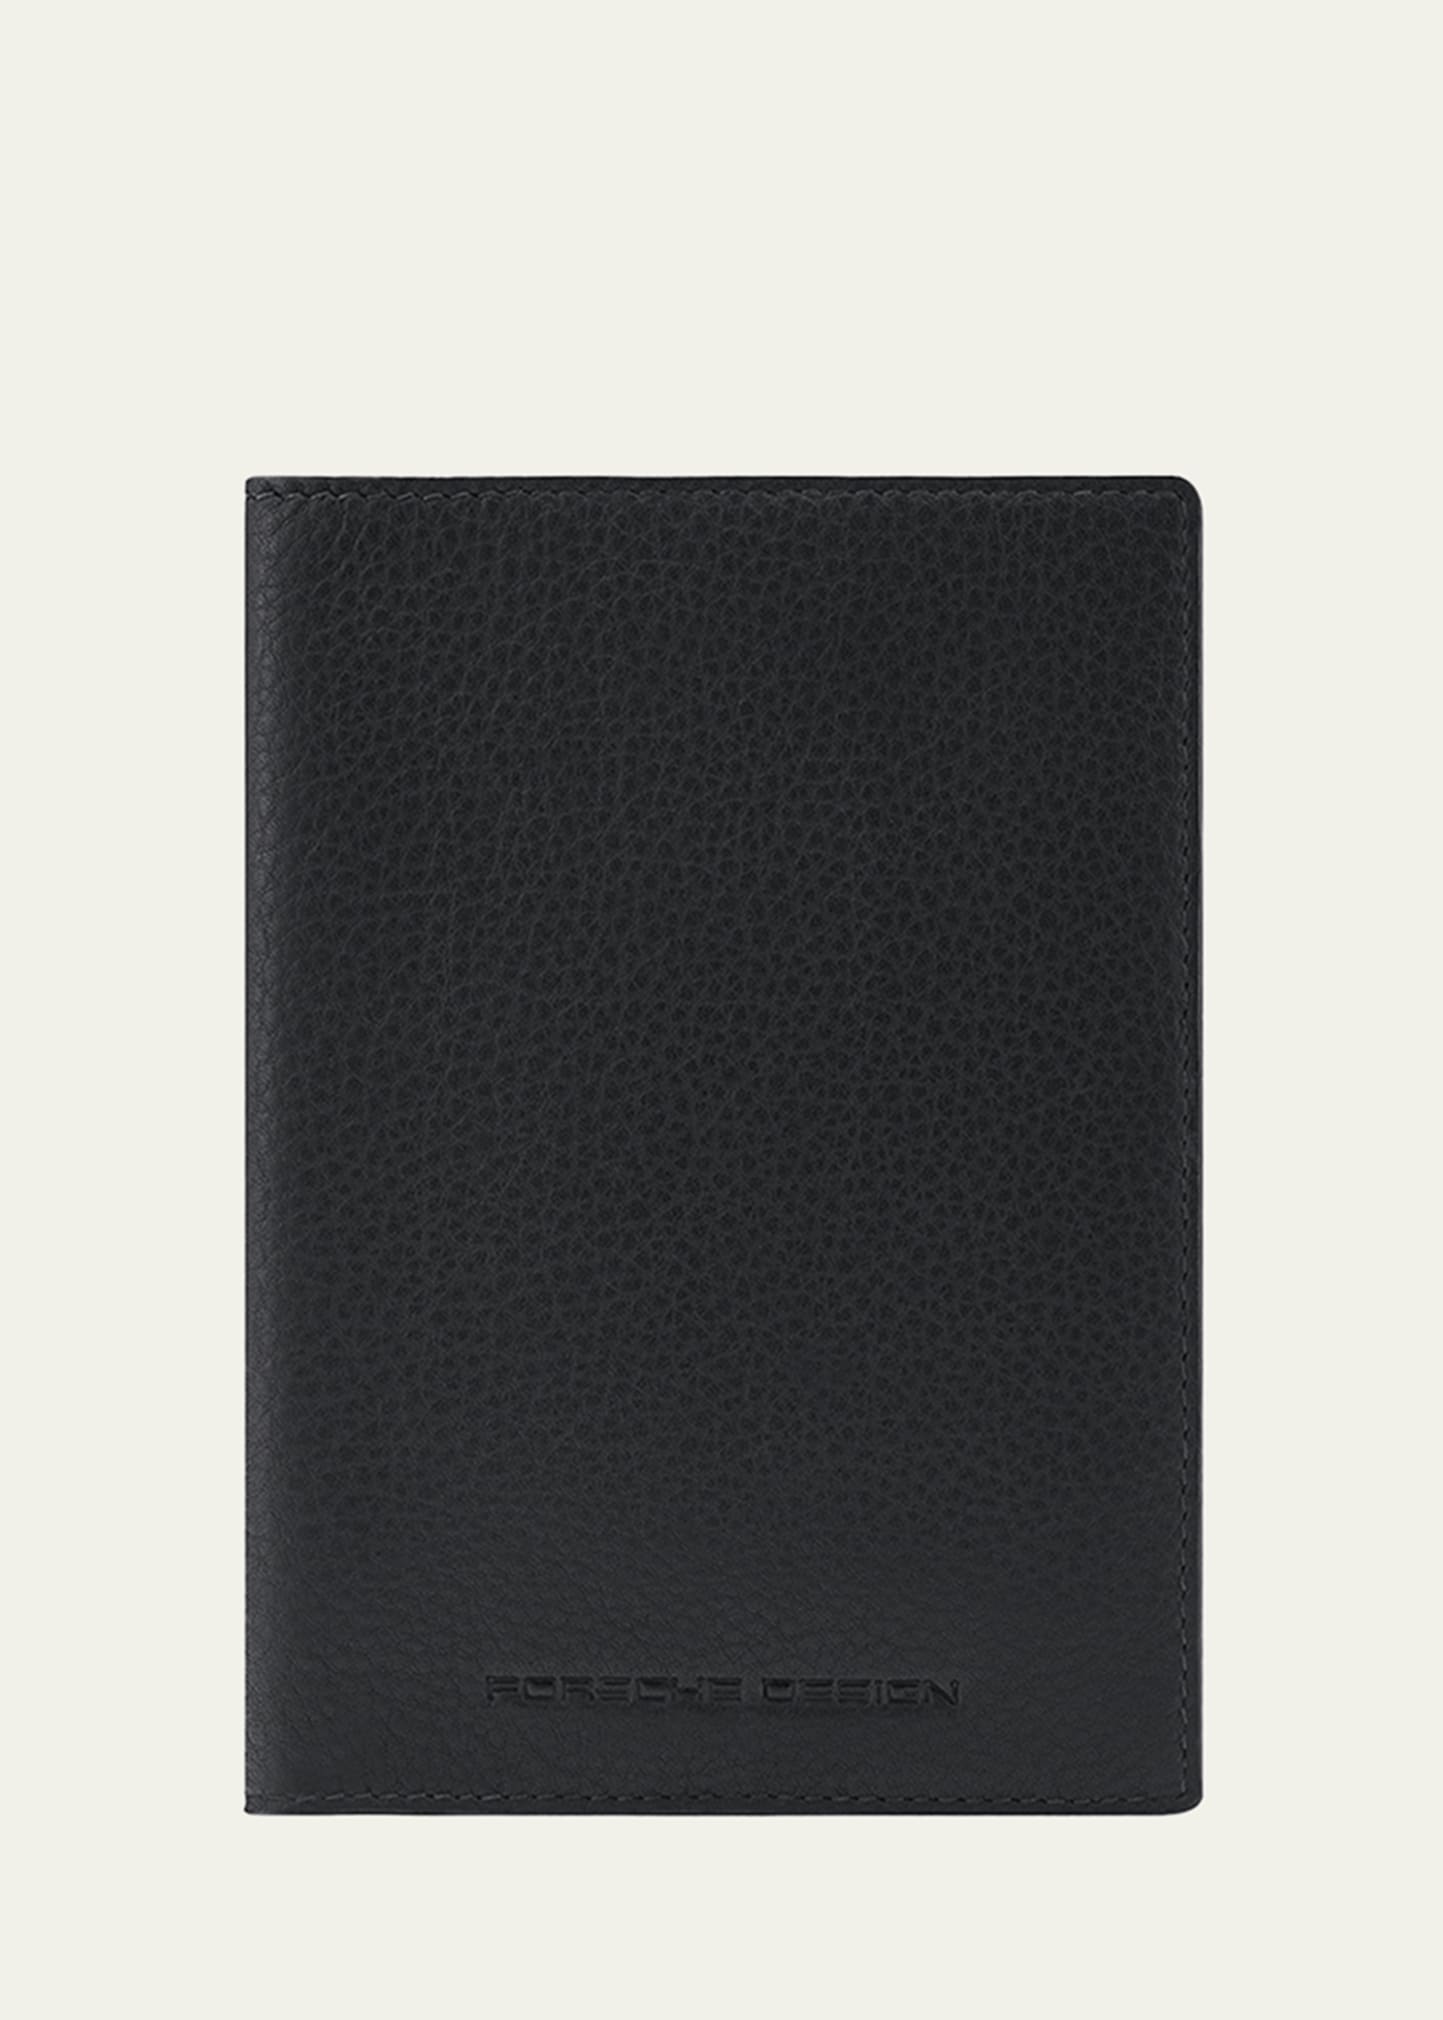 Porsche Design Business Passport Holder In Black